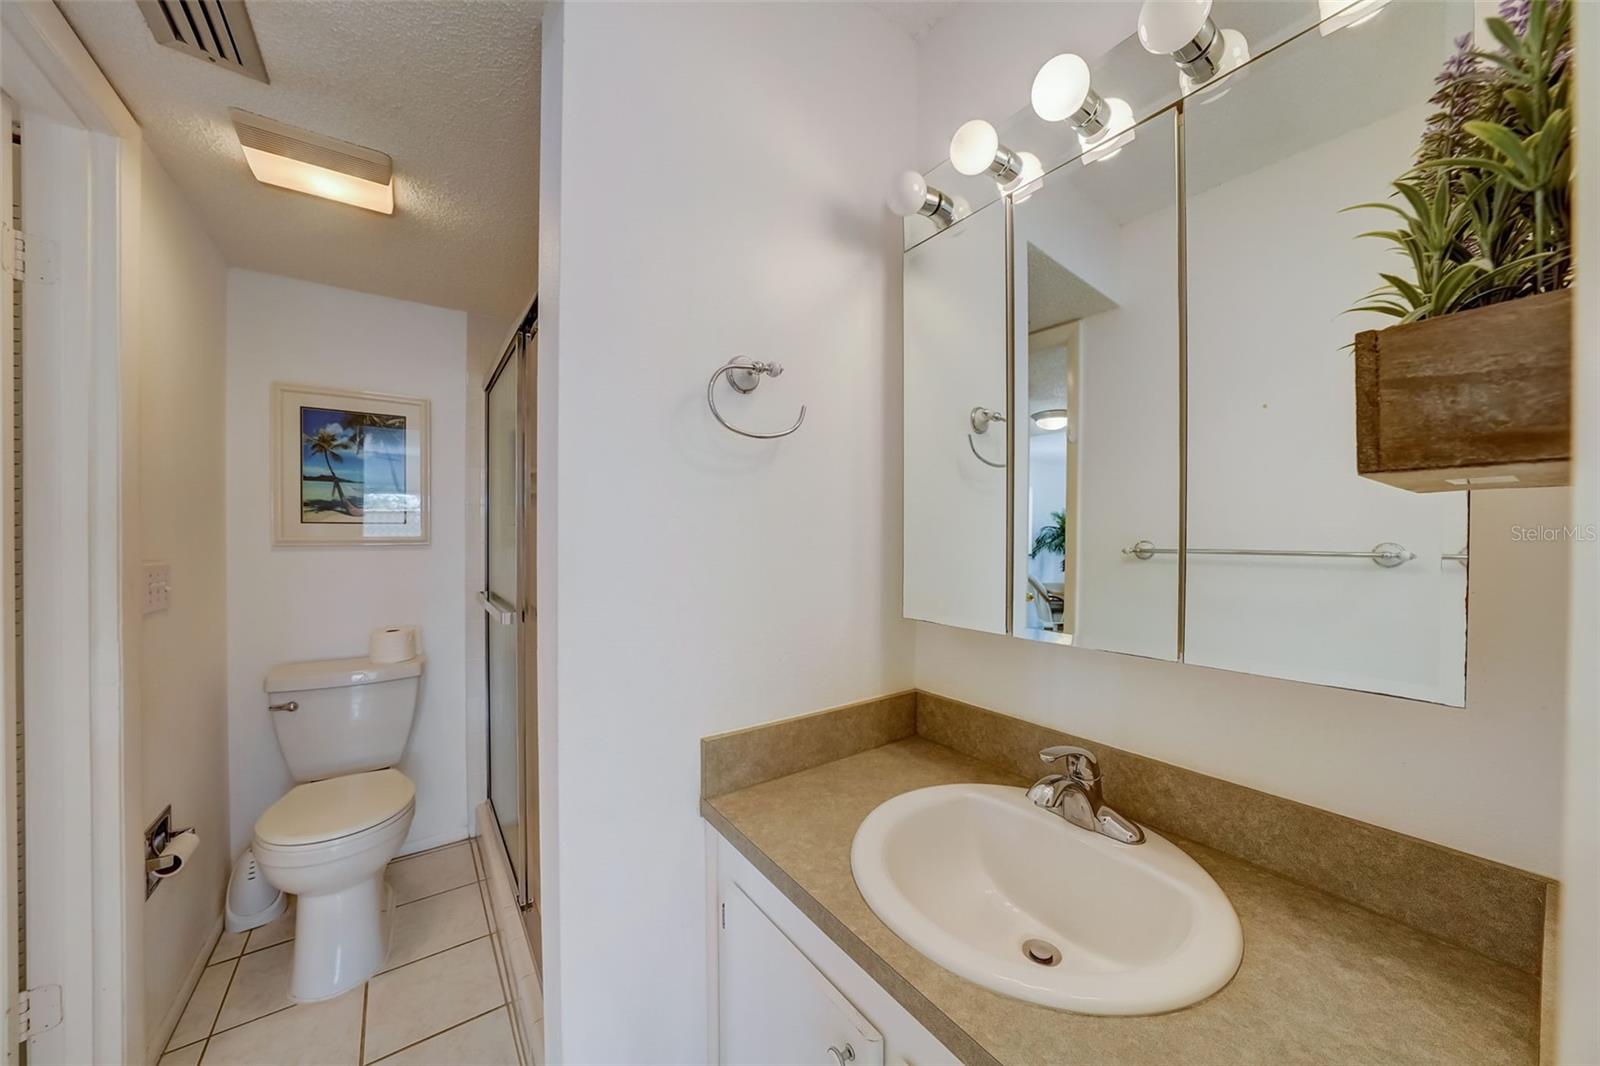 Ensuite bathroom with separate vanity area